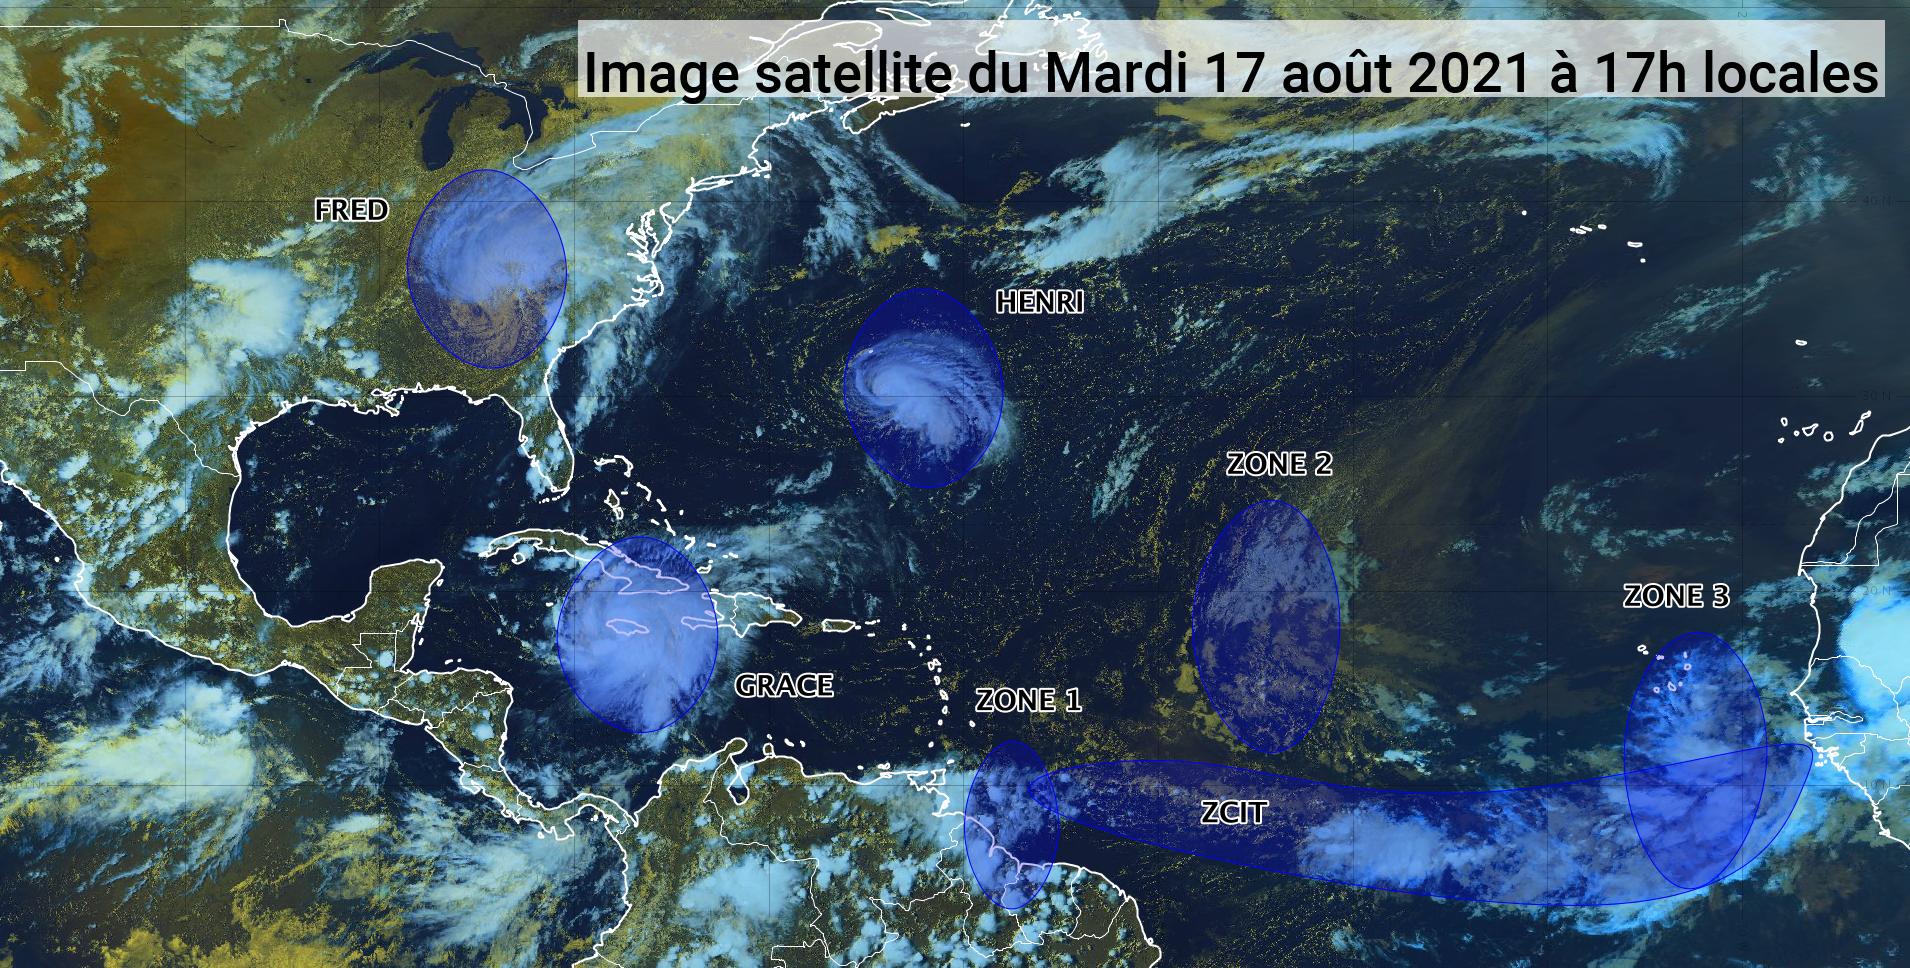      Trois ondes tropicales en cours en Atlantique (bulletin du 17/08/21)

